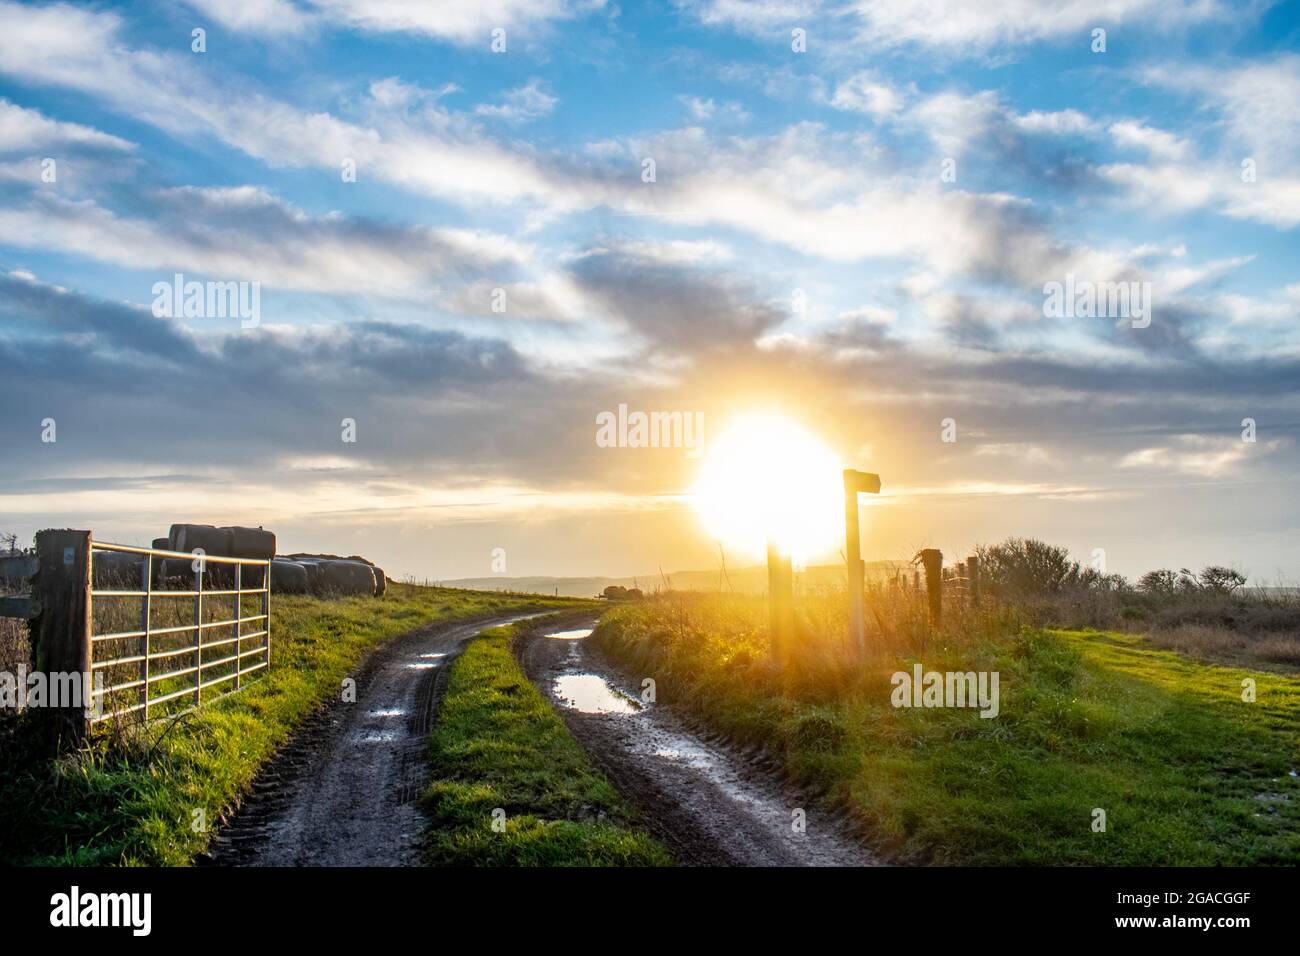 Farmers trattore cancello e pista fangosa con balle di fieno e basso sole arancione subito dopo l'alba sulla cima di una collina a Kimmeridge, Dorset Foto Stock